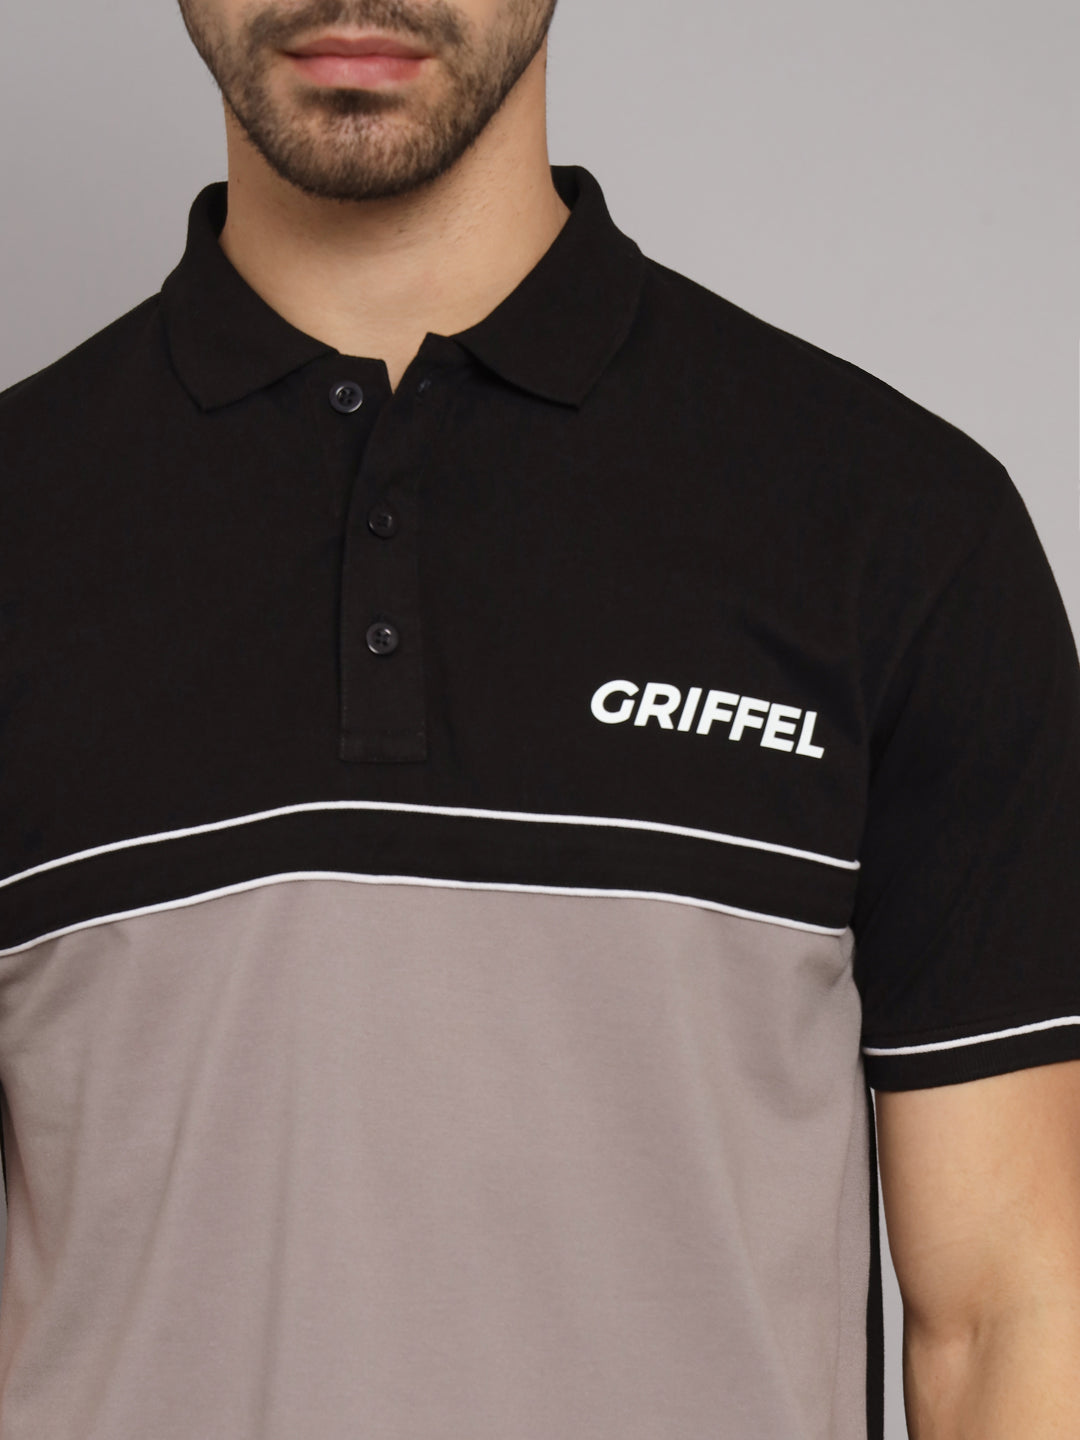 GRIFFEL Men's Beige Cotton Polo T-shirt - griffel